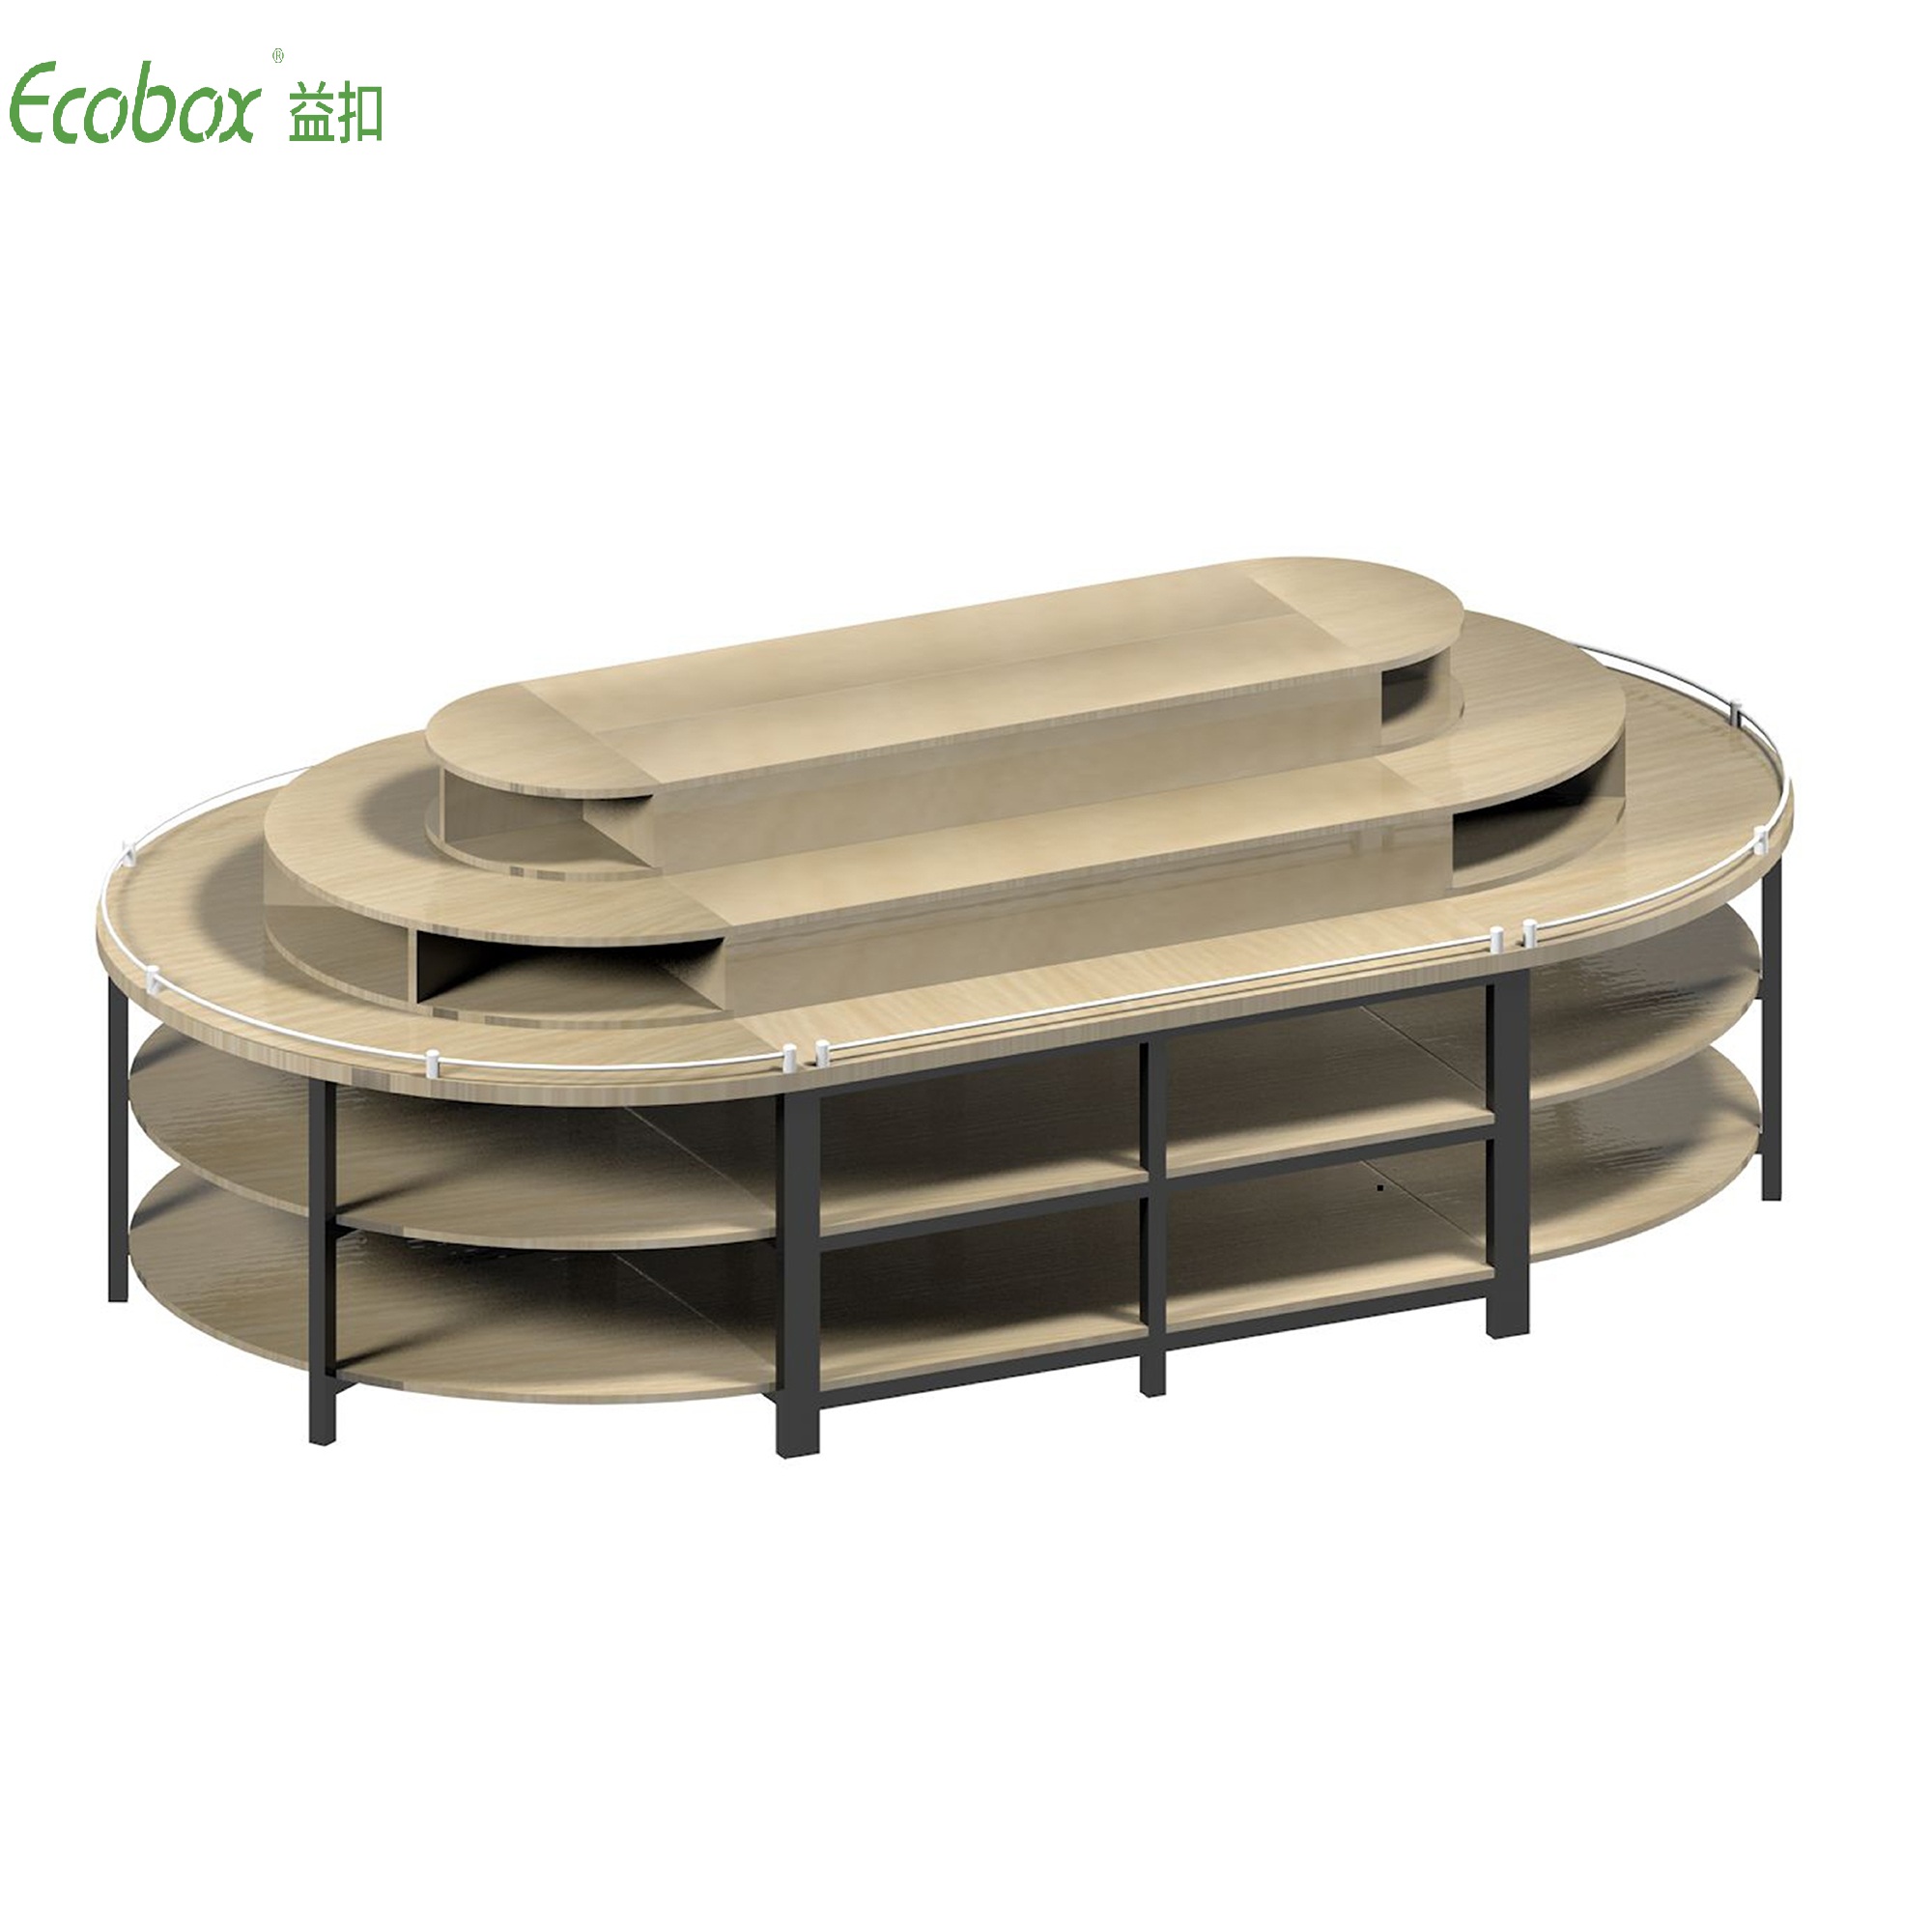 Rundes Regal der Ecobox G005-Serie mit Ecobox-Großbehältern für Supermarkt-Großlebensmitteldisplays